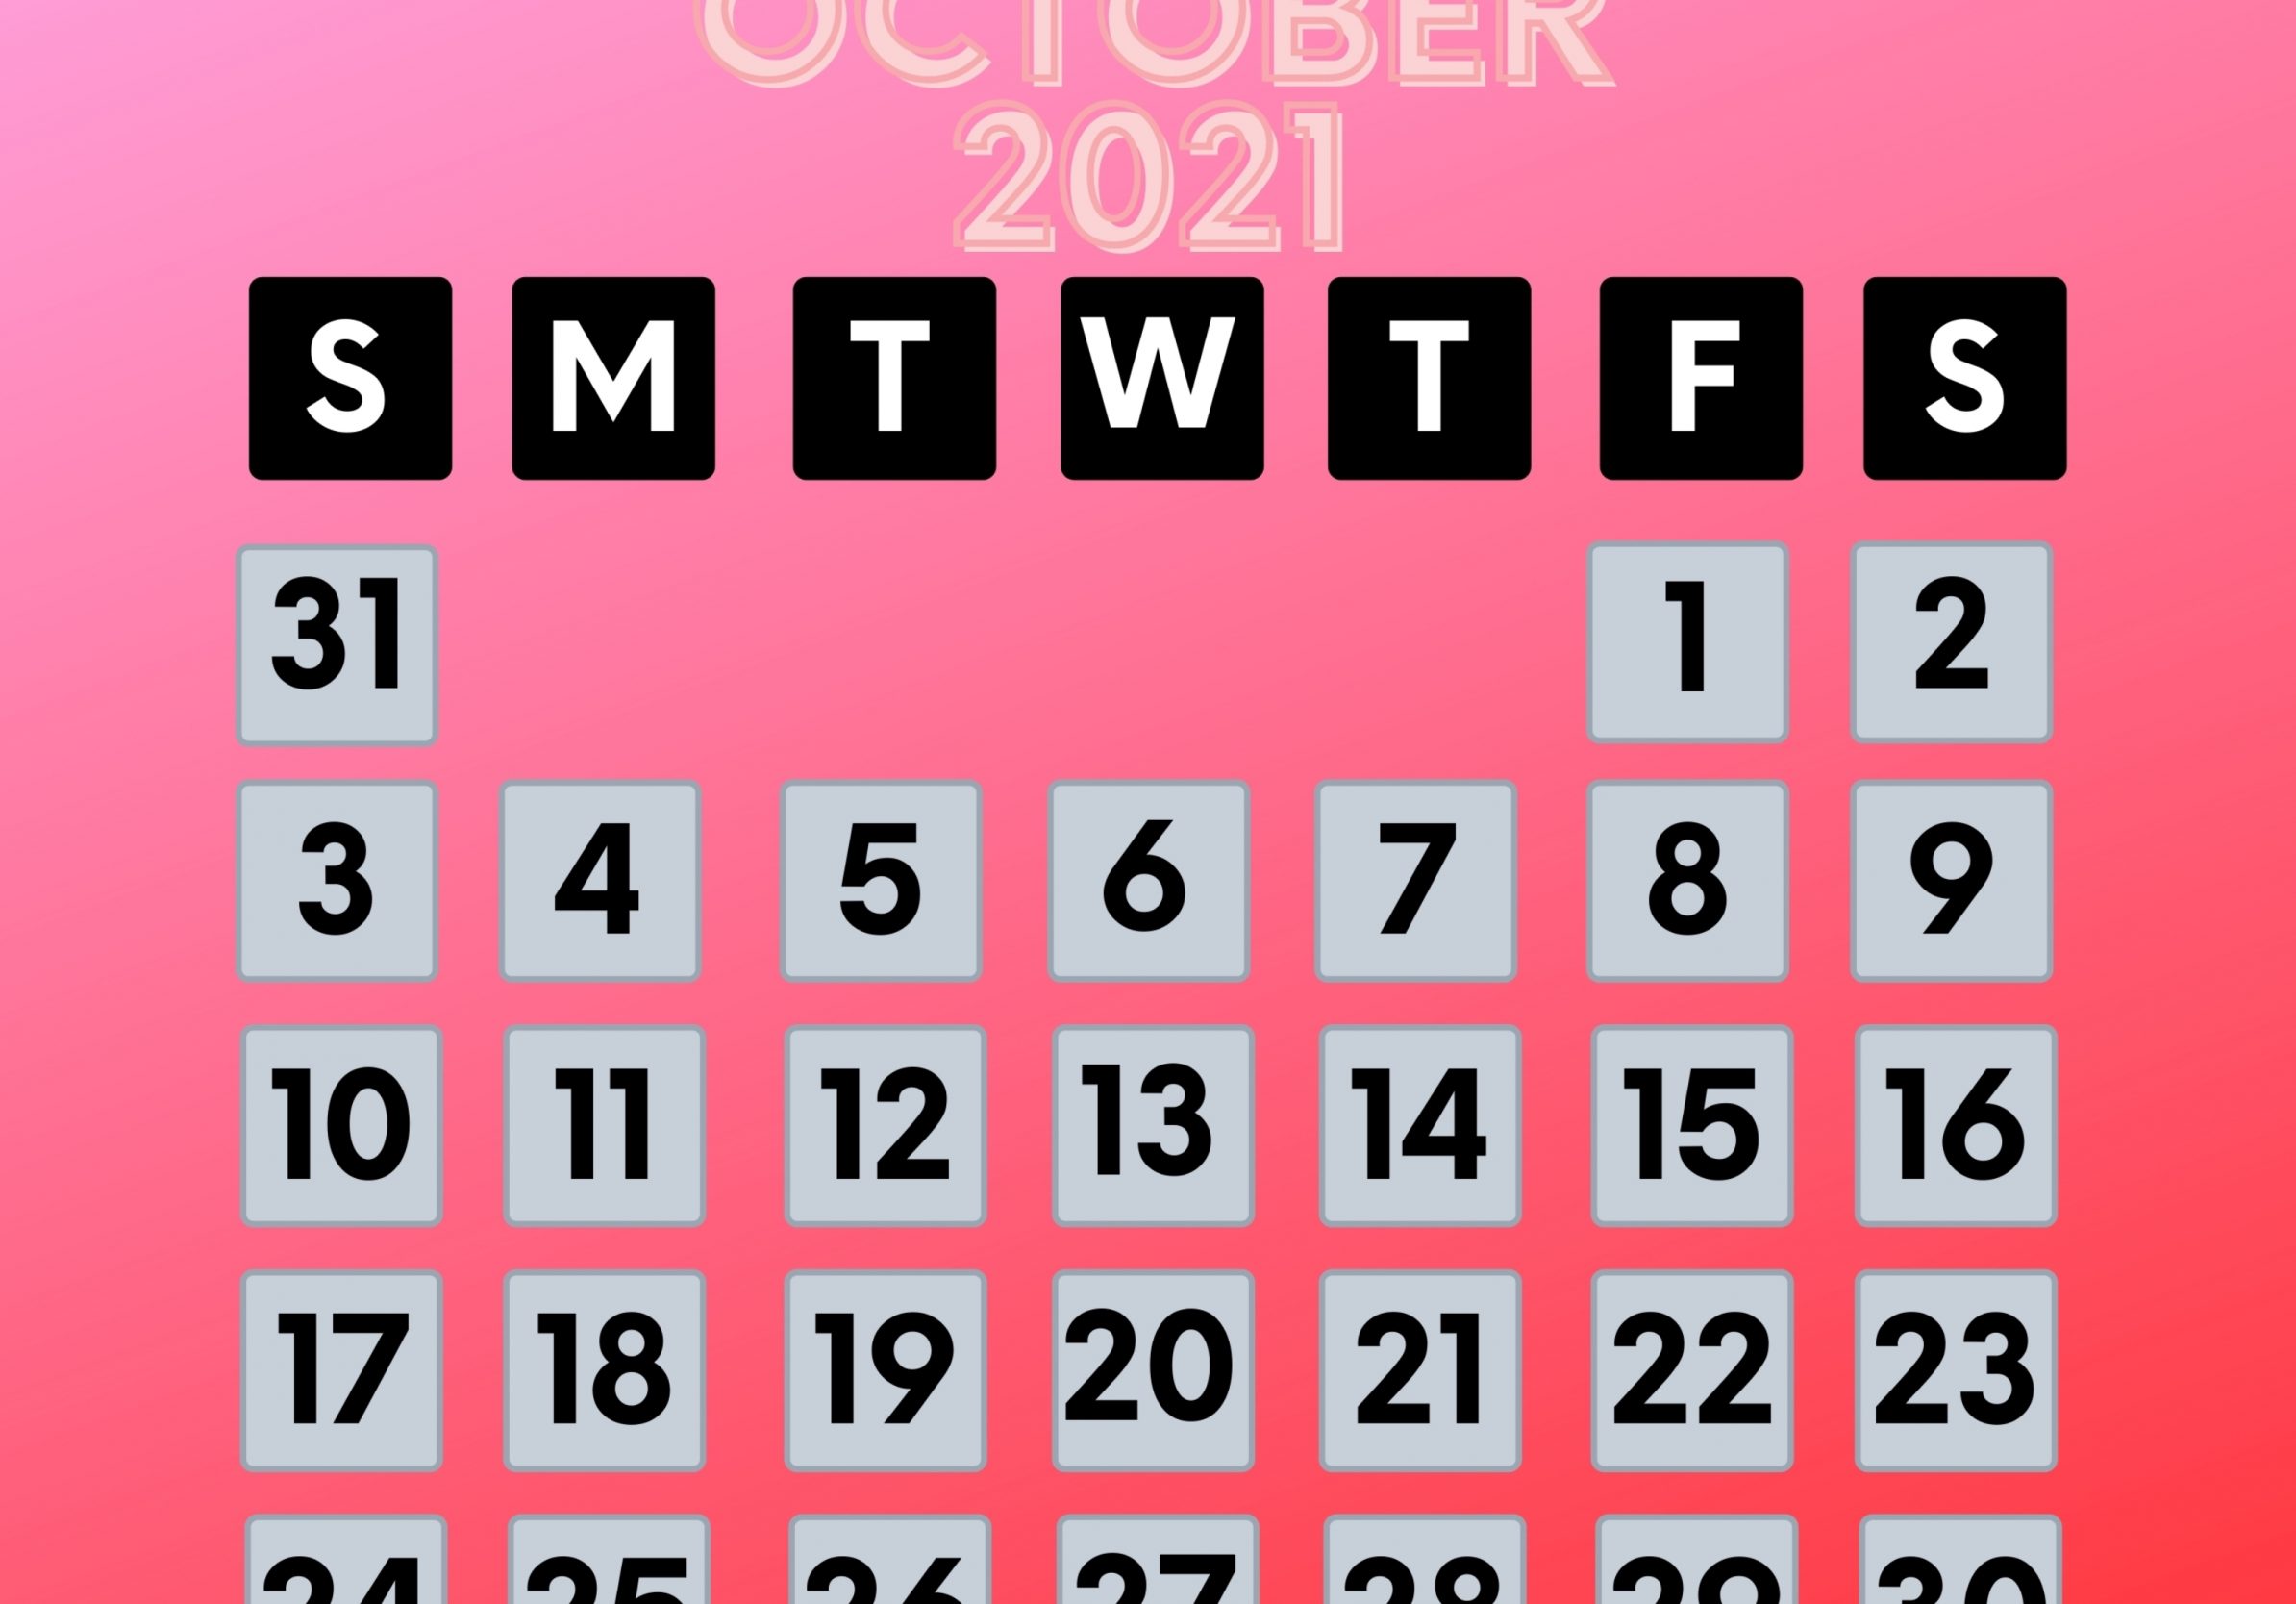 2388x1668 iPad Pro wallpapers October 2021 Calendar iPad Wallpaper 2388x1668 pixels resolution